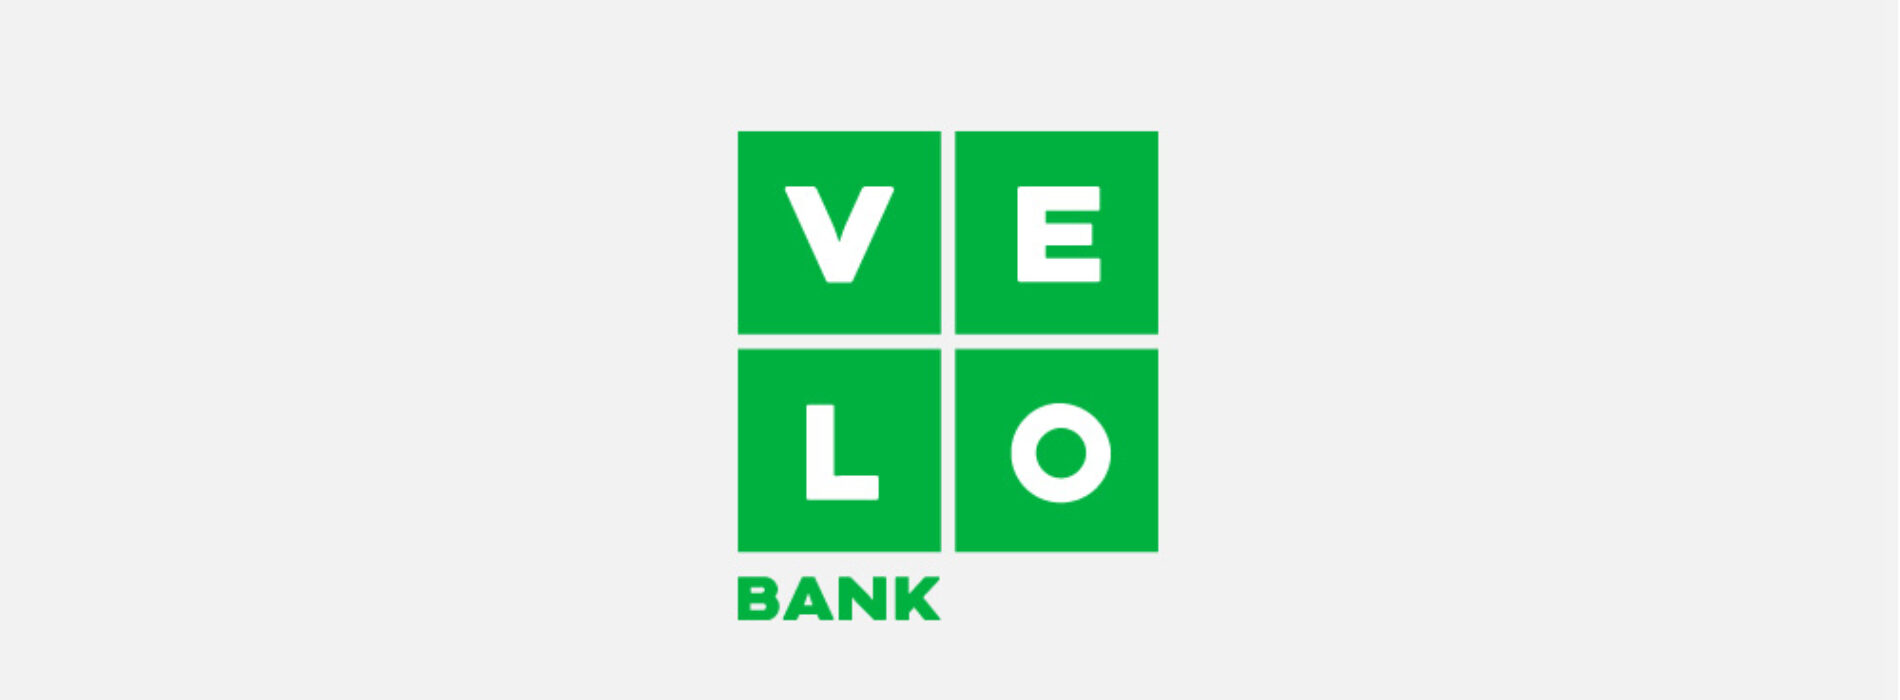 VeloBank – opinie klientów i informacje o banku